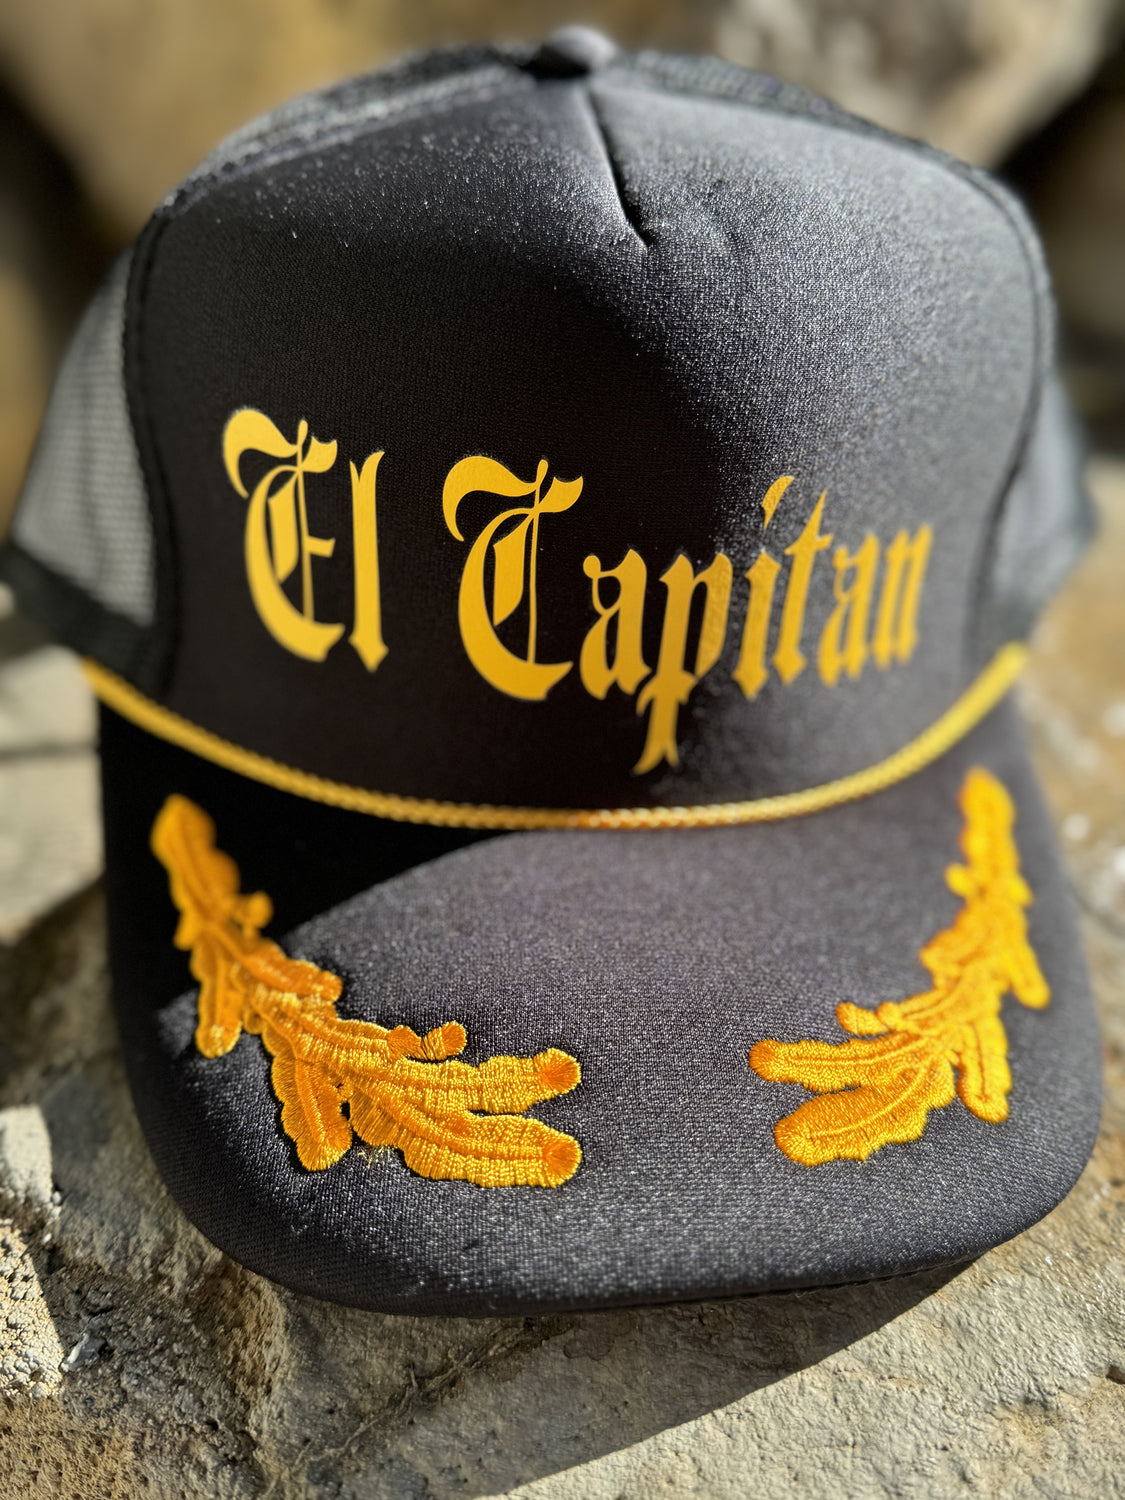 El Captain Snapback Hat